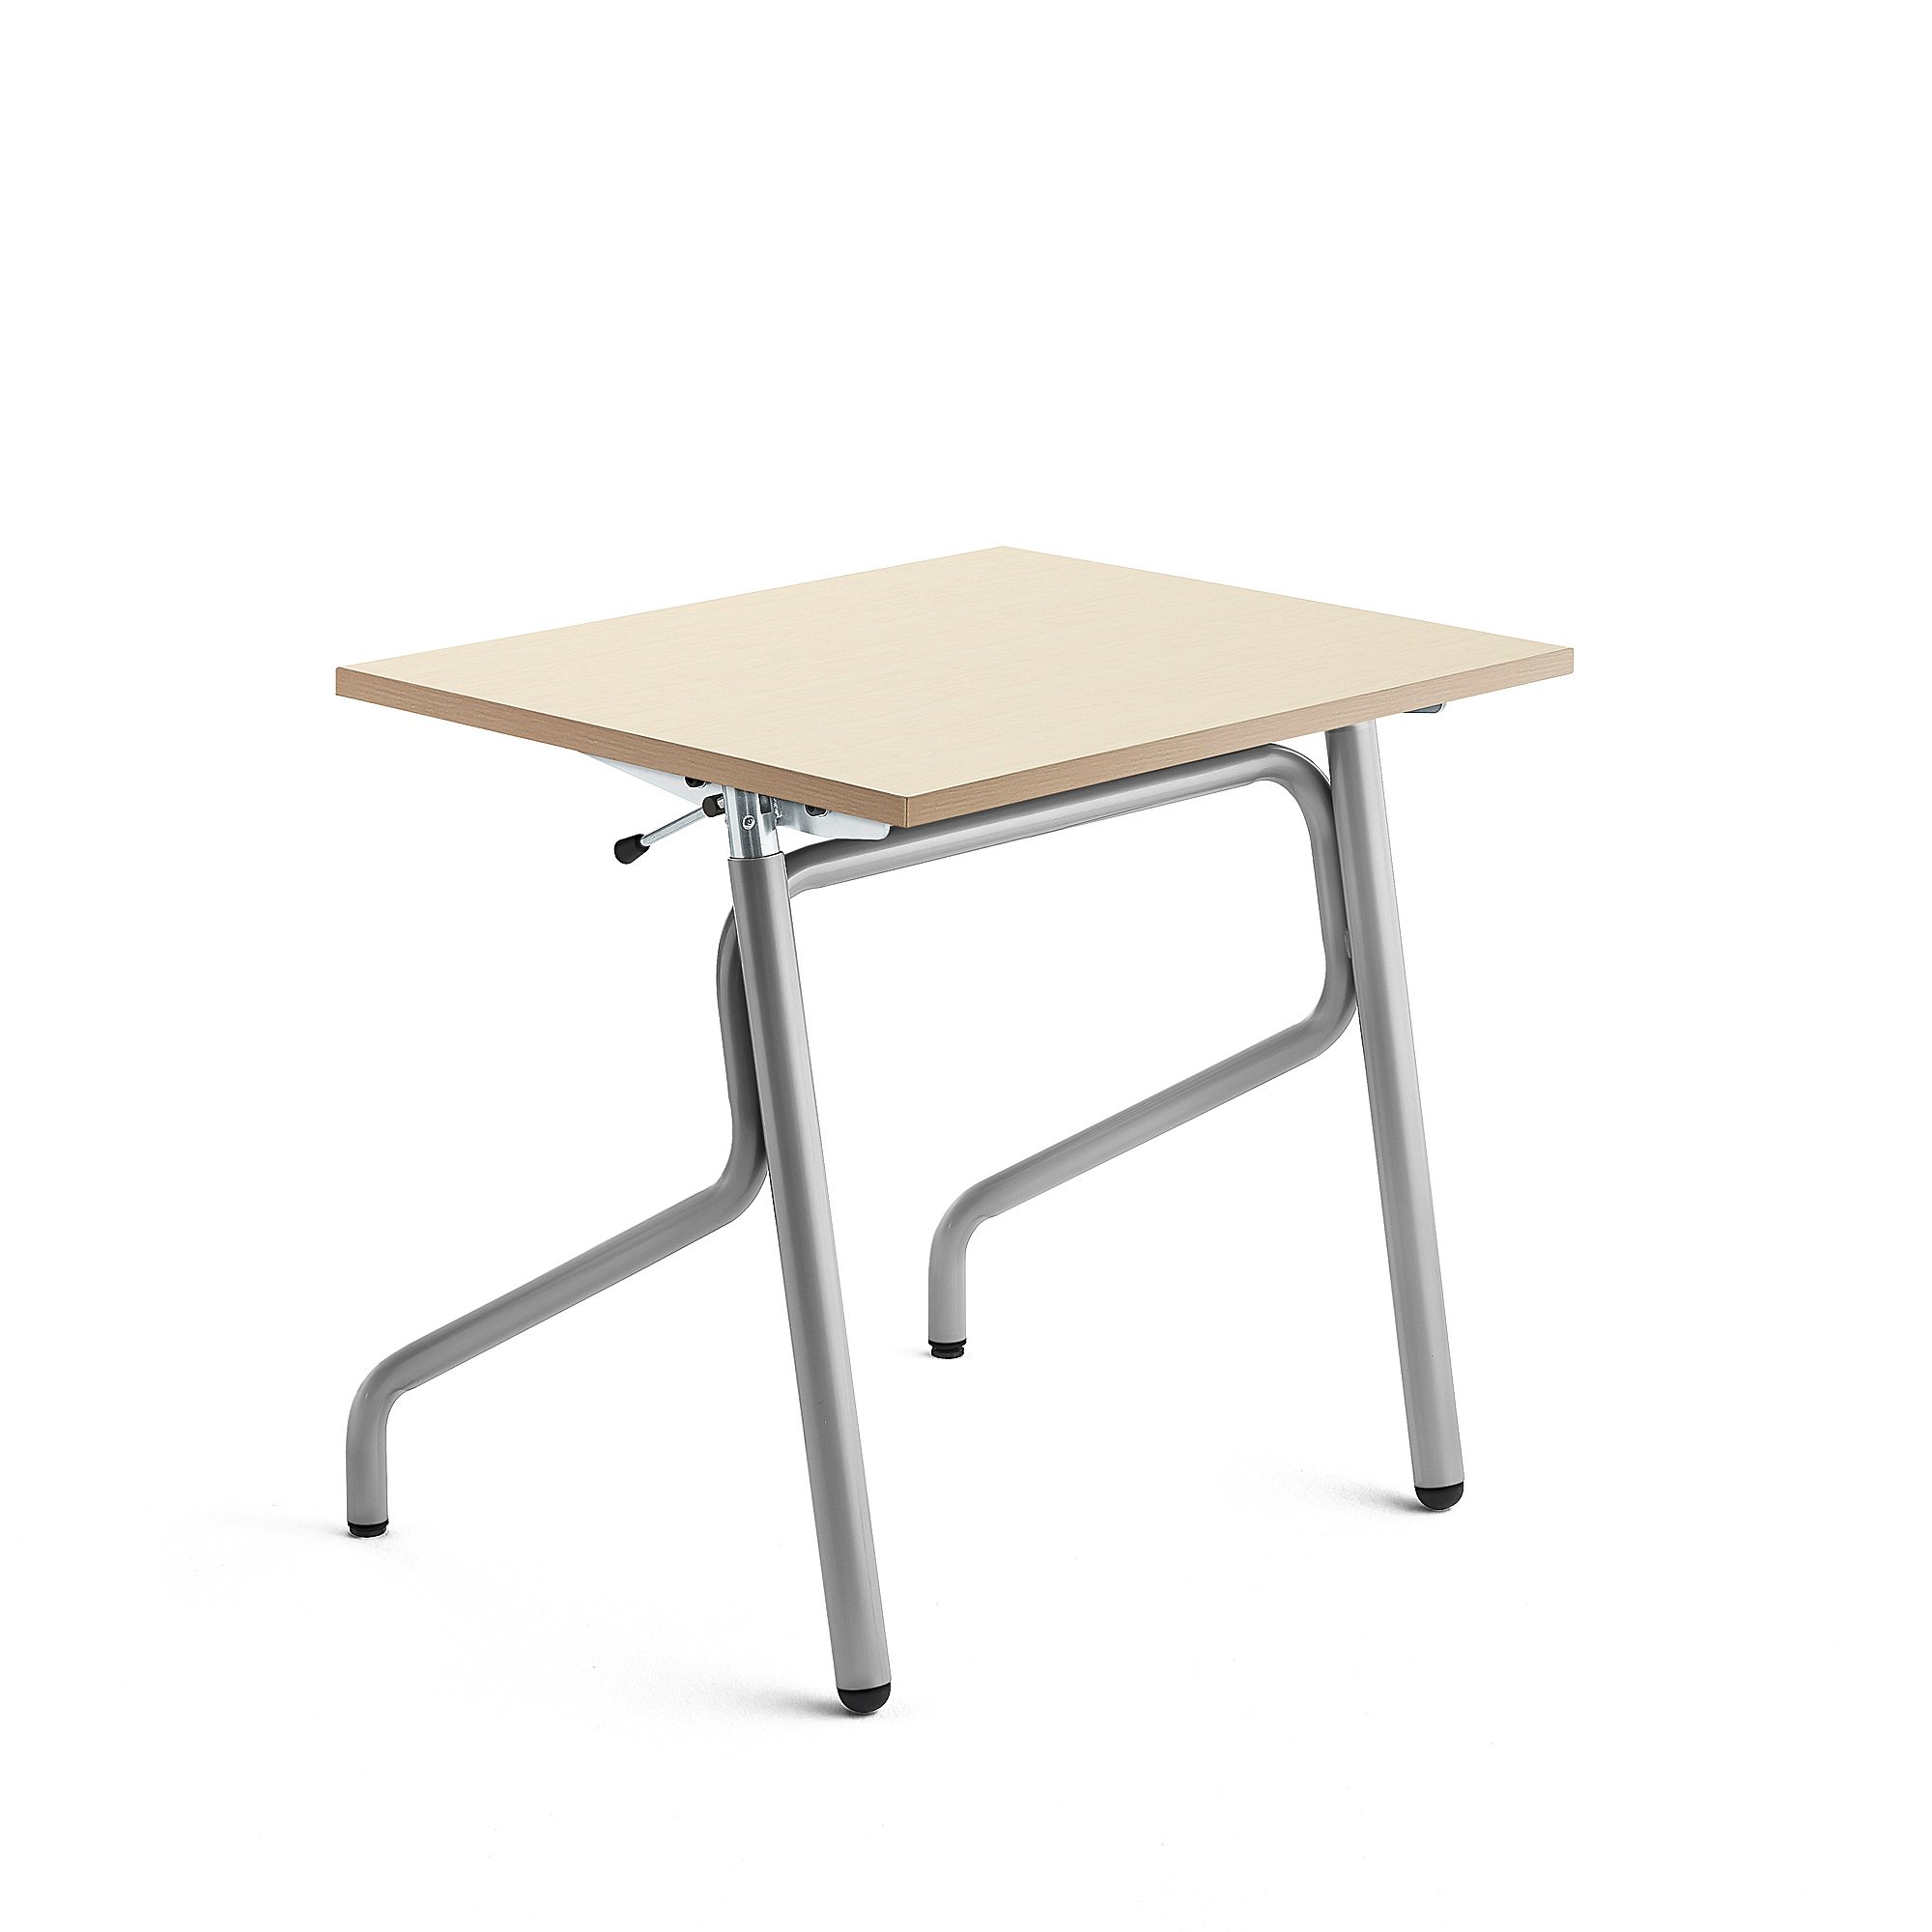 Školní lavice ADJUST, výškově nastavitelná, 700x600 mm, HPL deska tlumící hluk, bříza, stříbrná